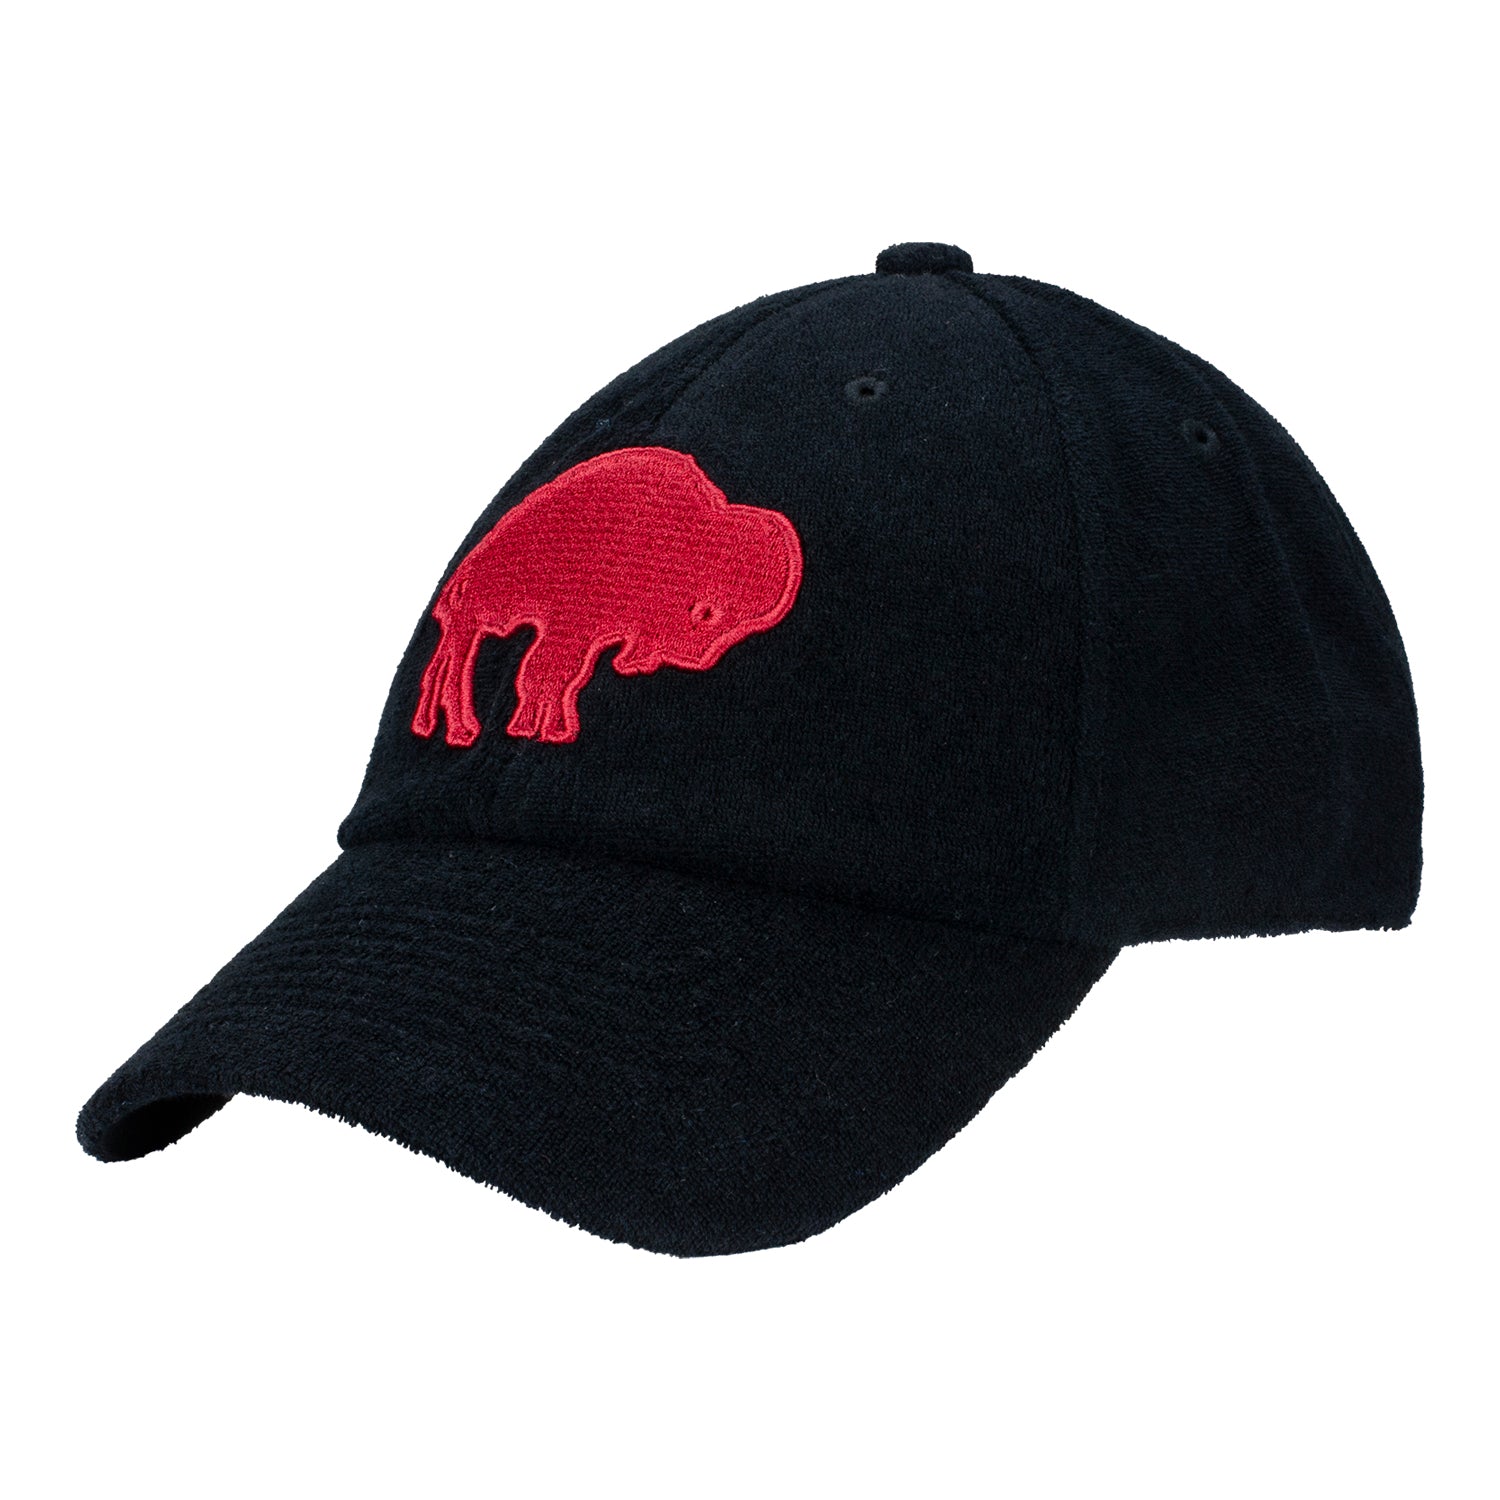 buffalo bills mitchell and ness hat